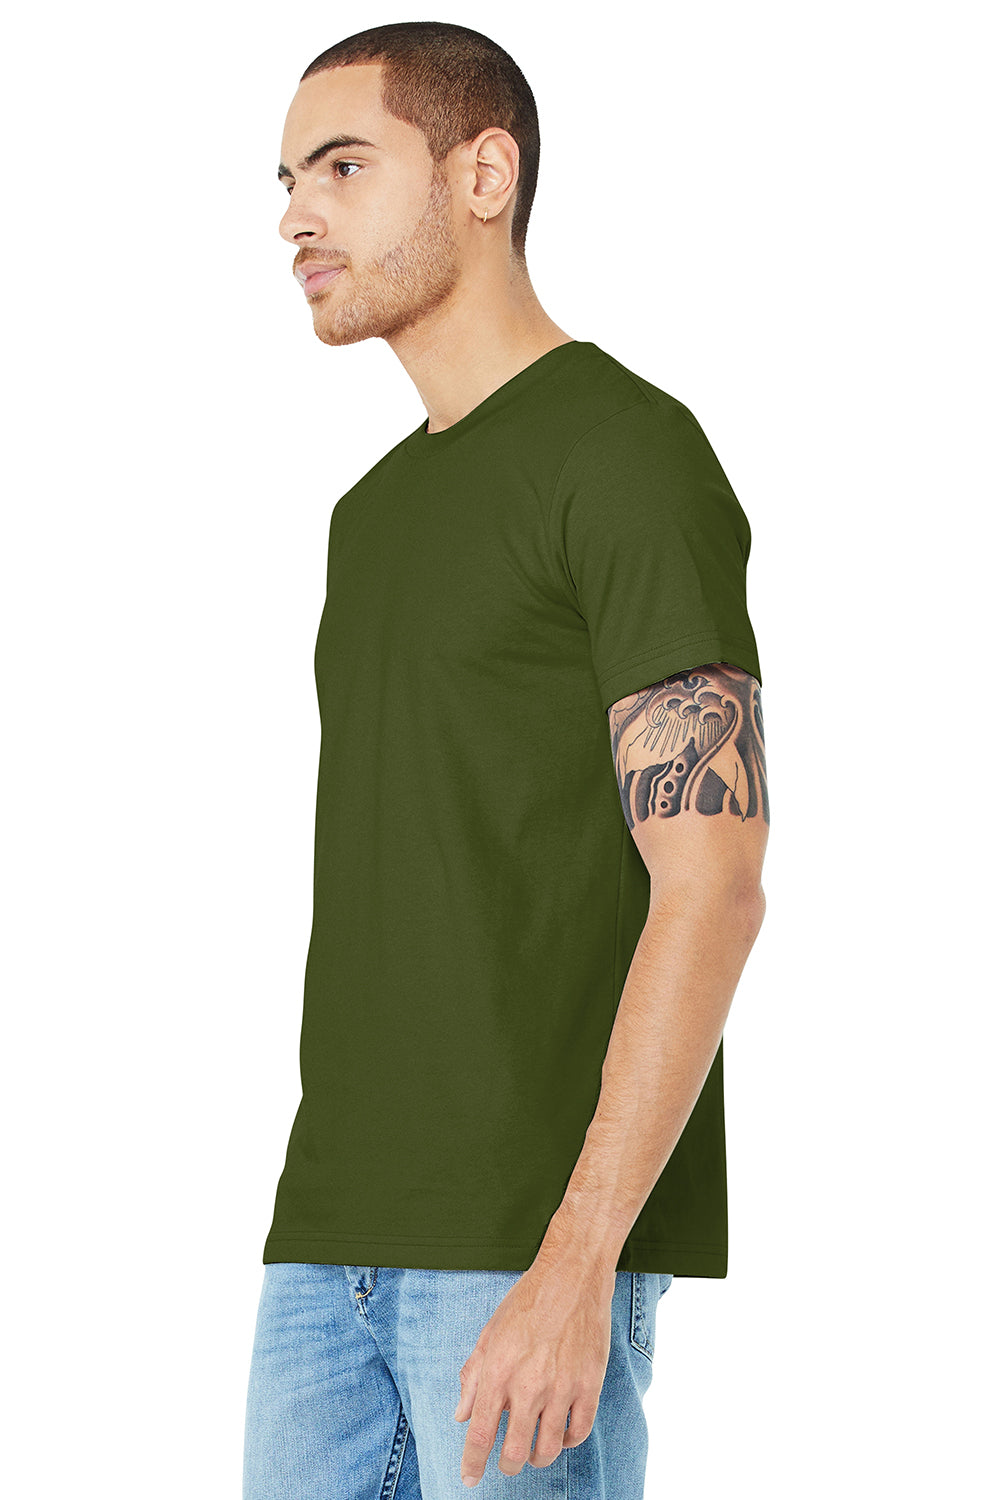 Bella + Canvas BC3001/3001C Mens Jersey Short Sleeve Crewneck T-Shirt Olive Green Model 3Q